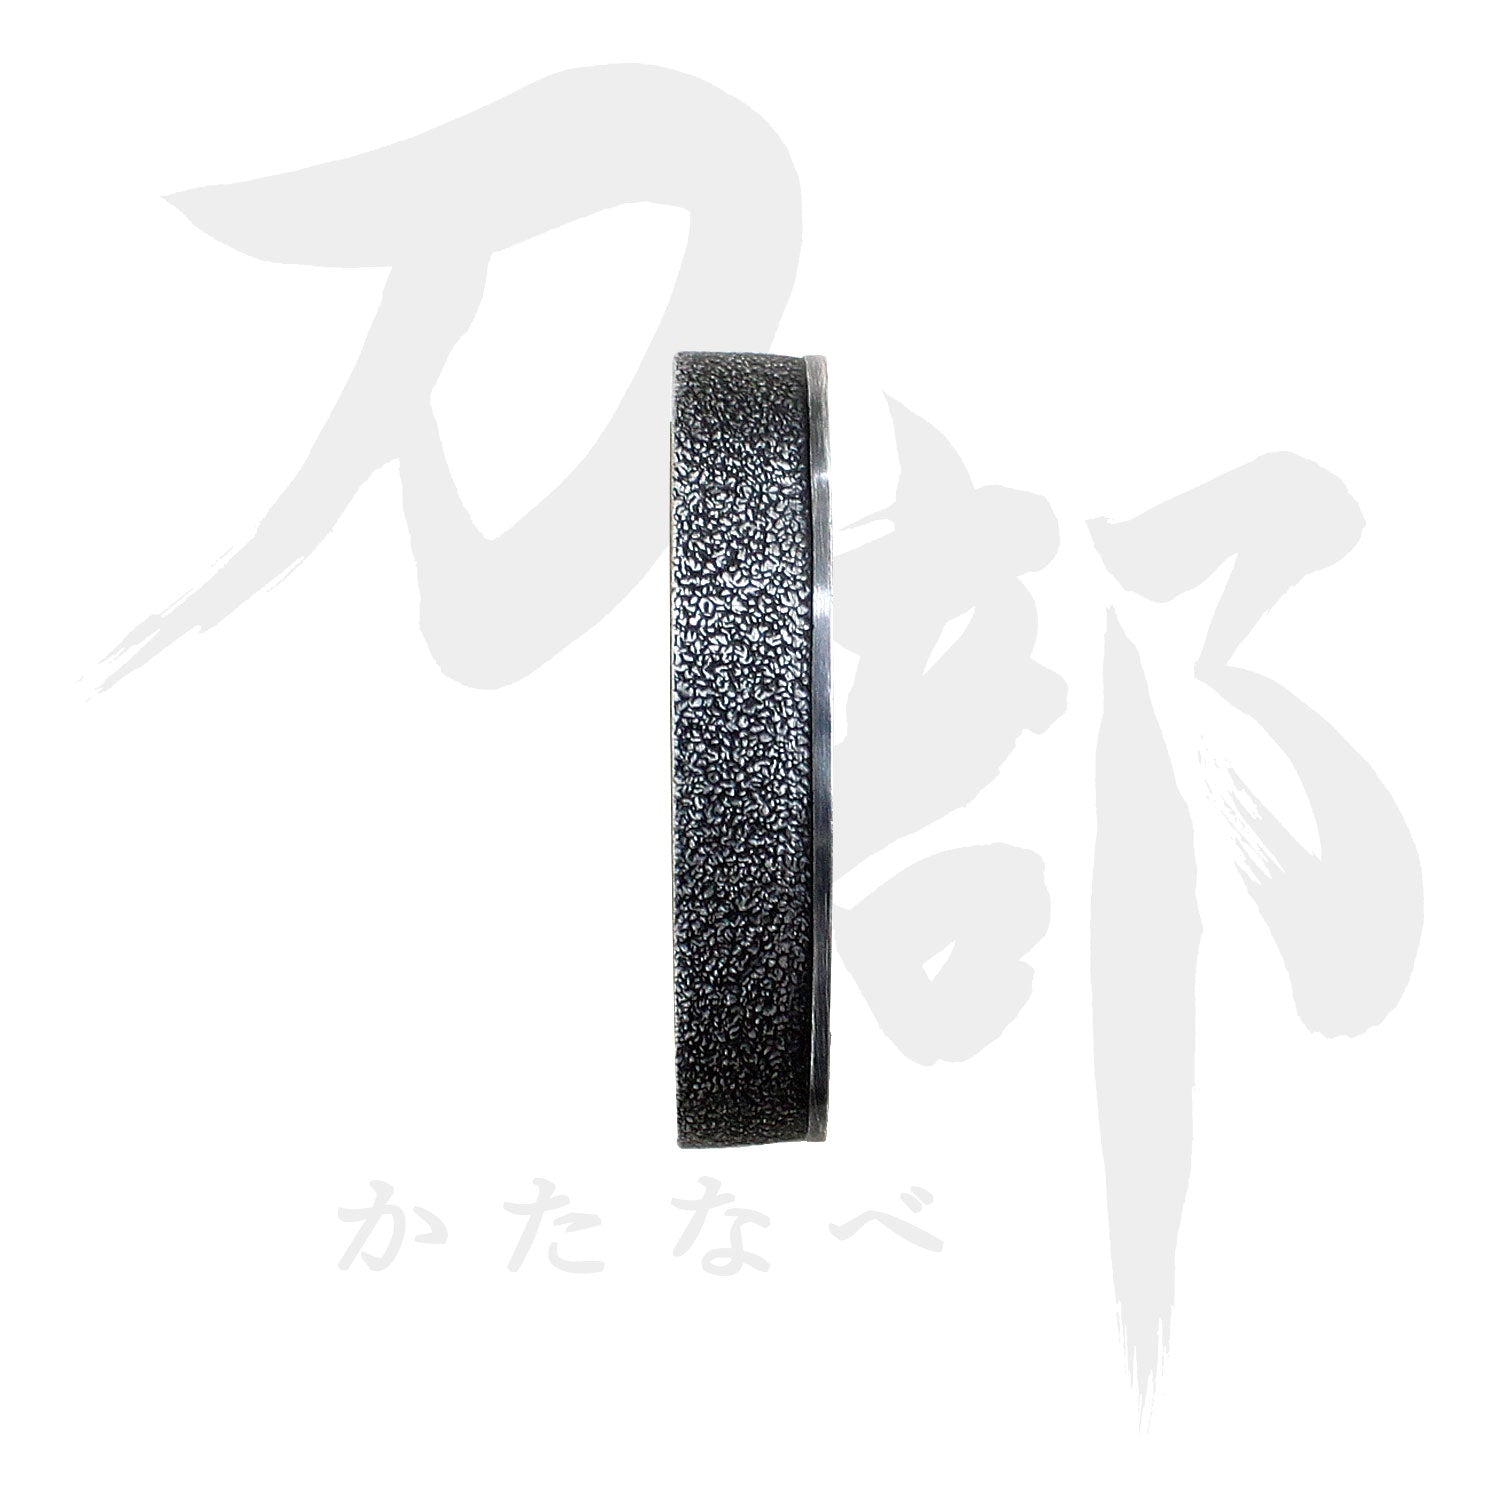 肥後石目図(土方) 黒 K-028-3BR3-